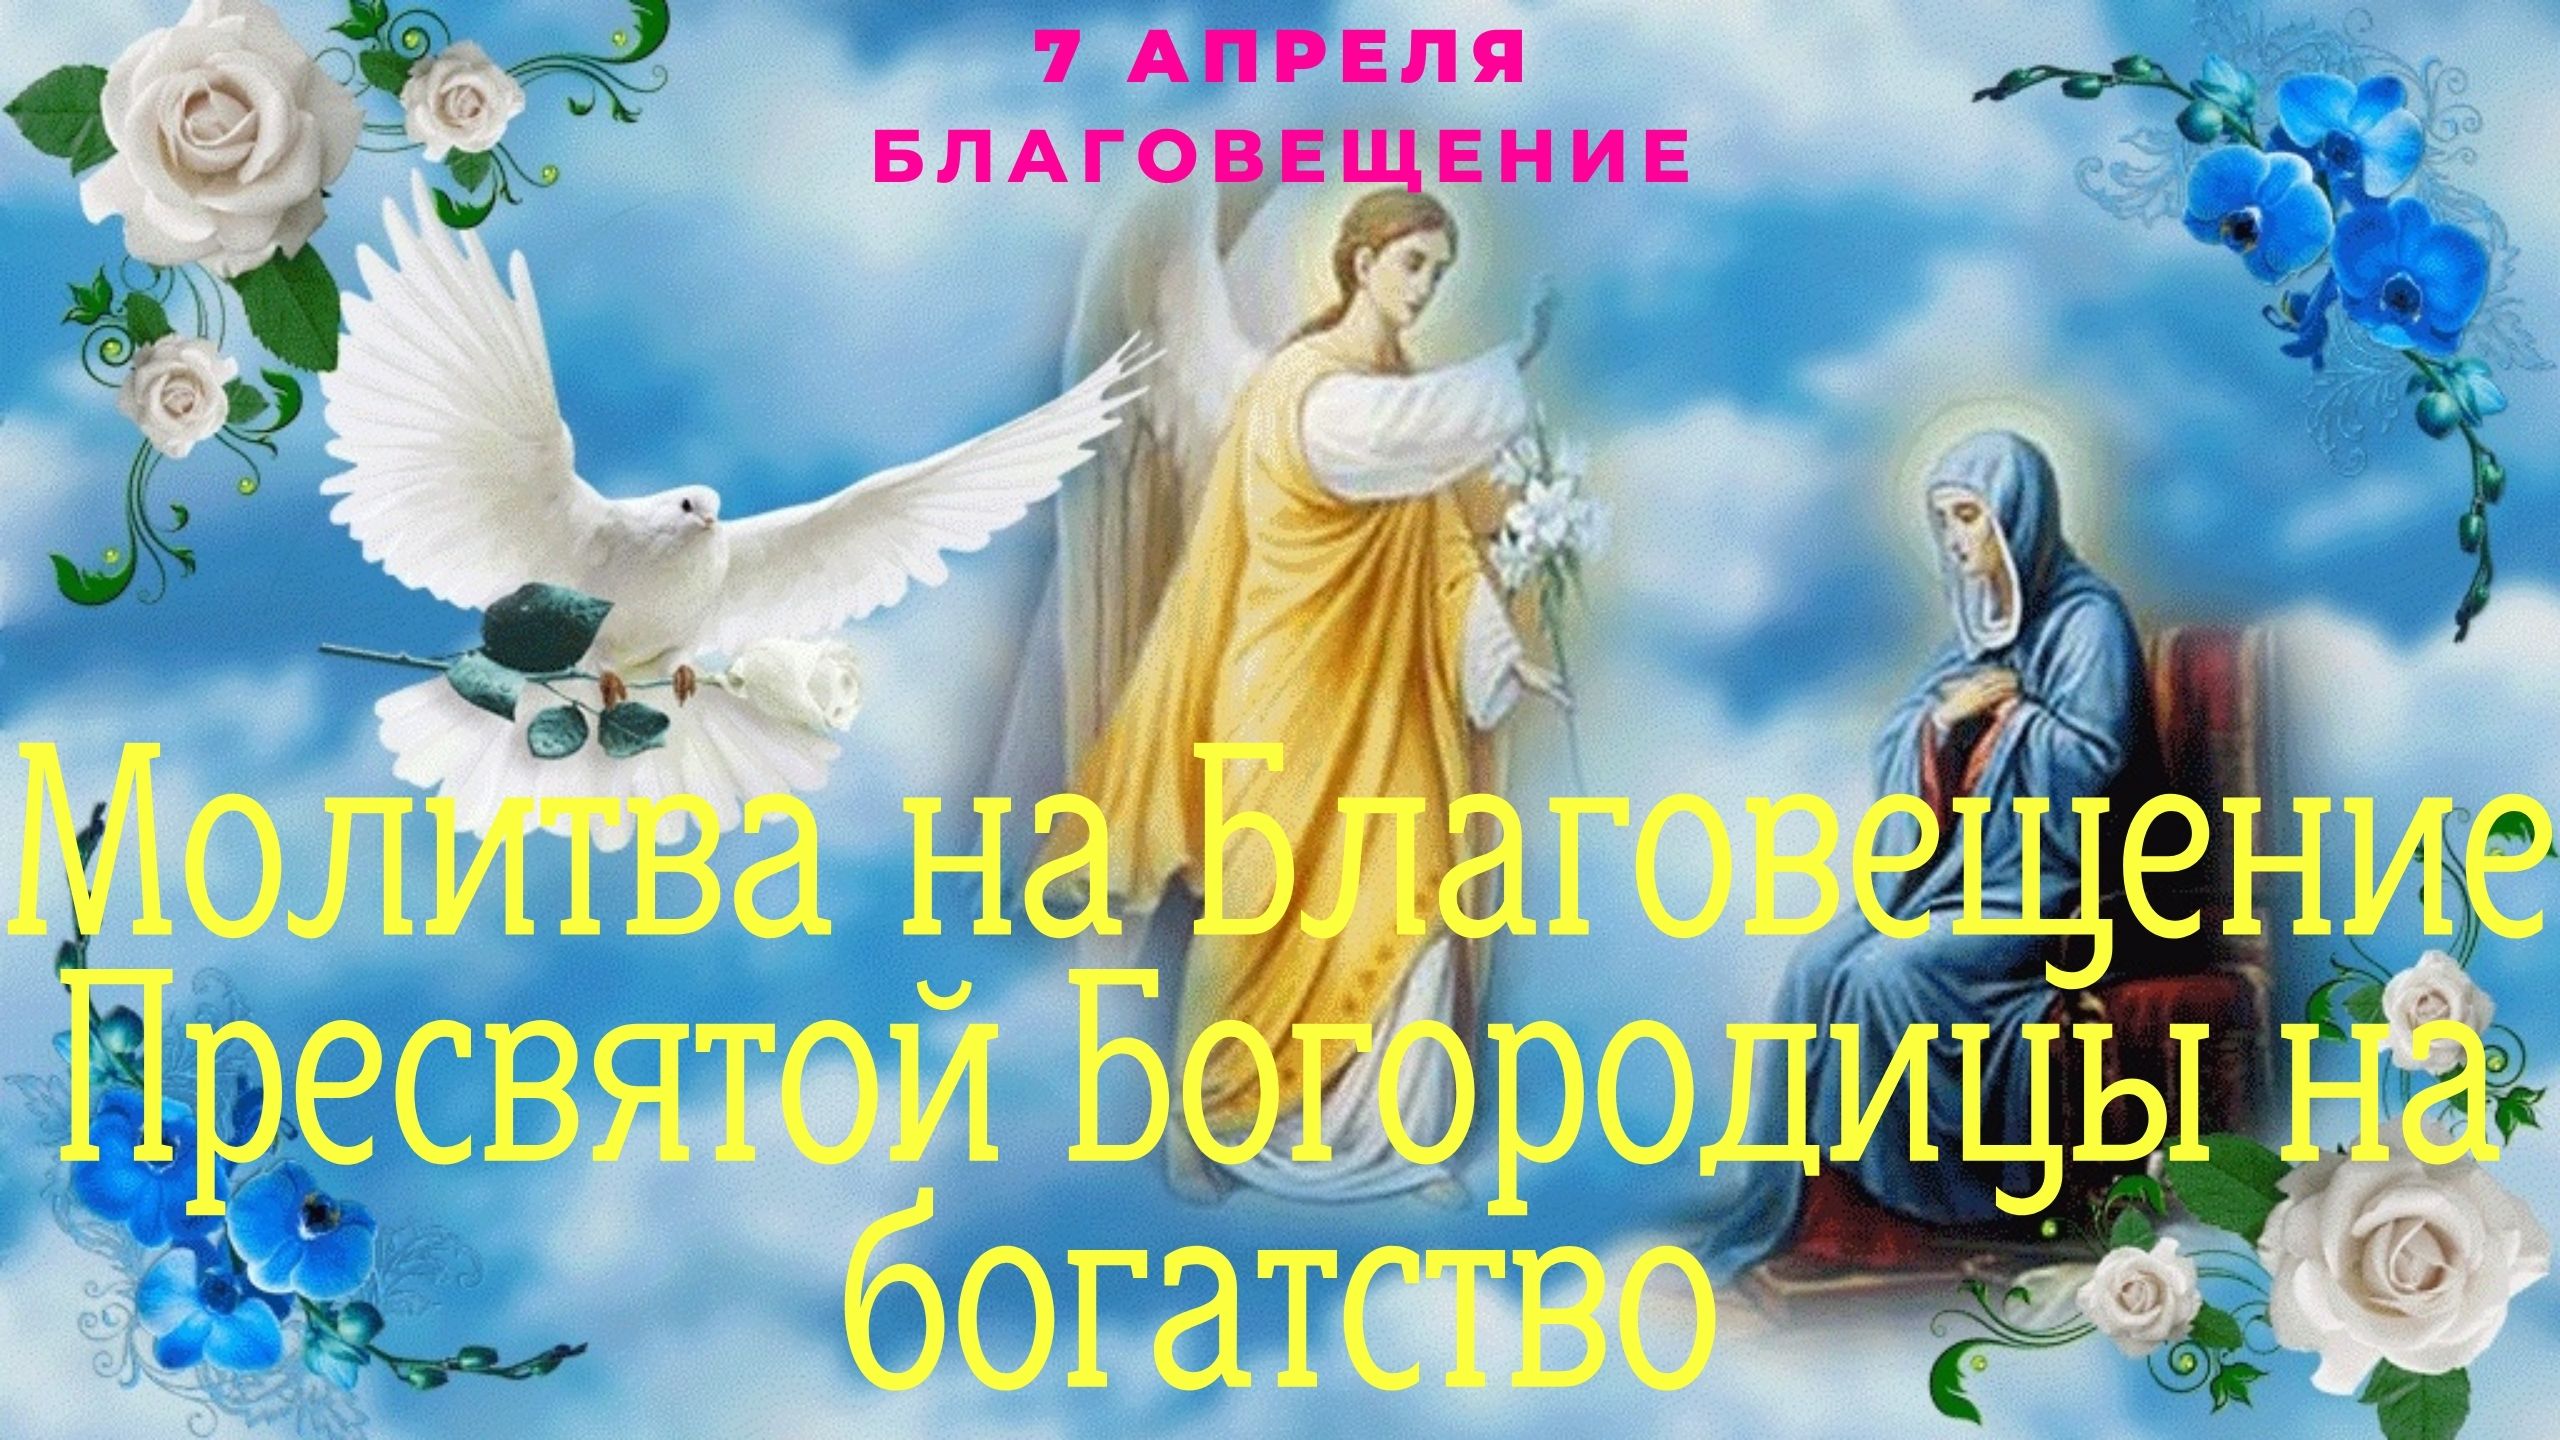 Завтра 7 апреля какой православный праздник. 7 Апреля Благовещение. С Благовещением открытки. 7 Апреля праздник Благовещенье. Благовещение поздравления.